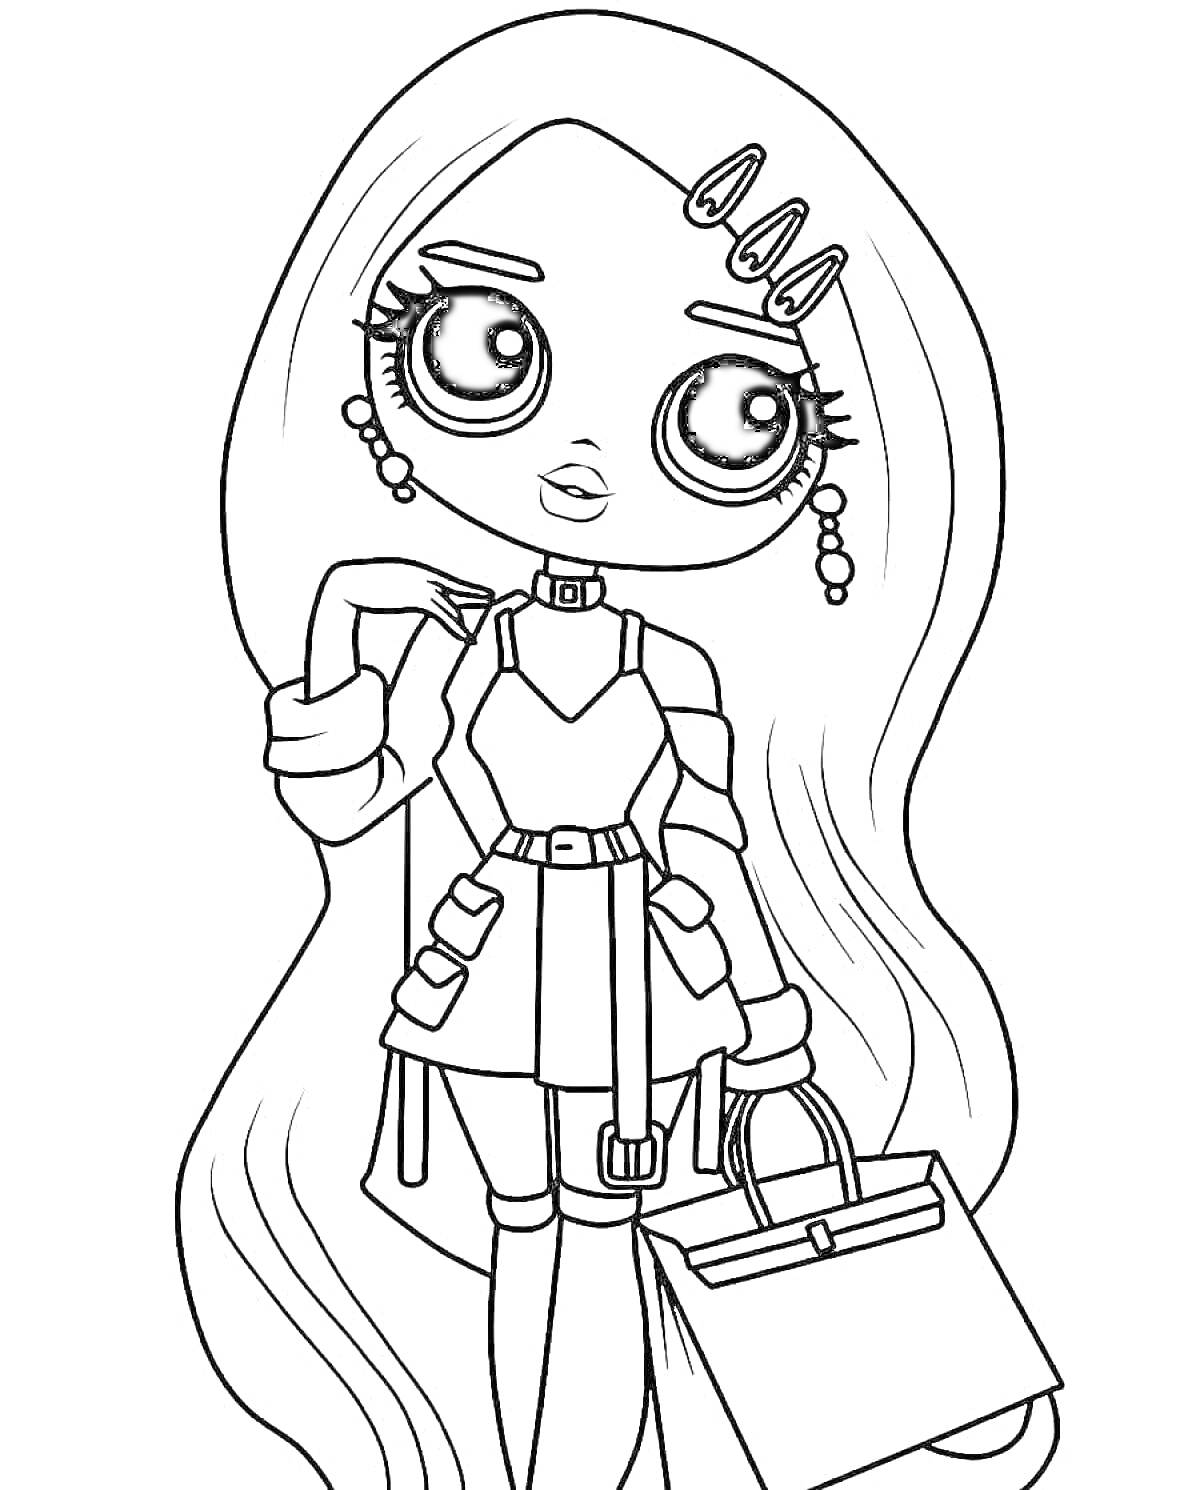 Раскраска Большая кукла LOL с длинными волосами, серьгами, заколками, платьем с рюшами, ремнем и сумкой.